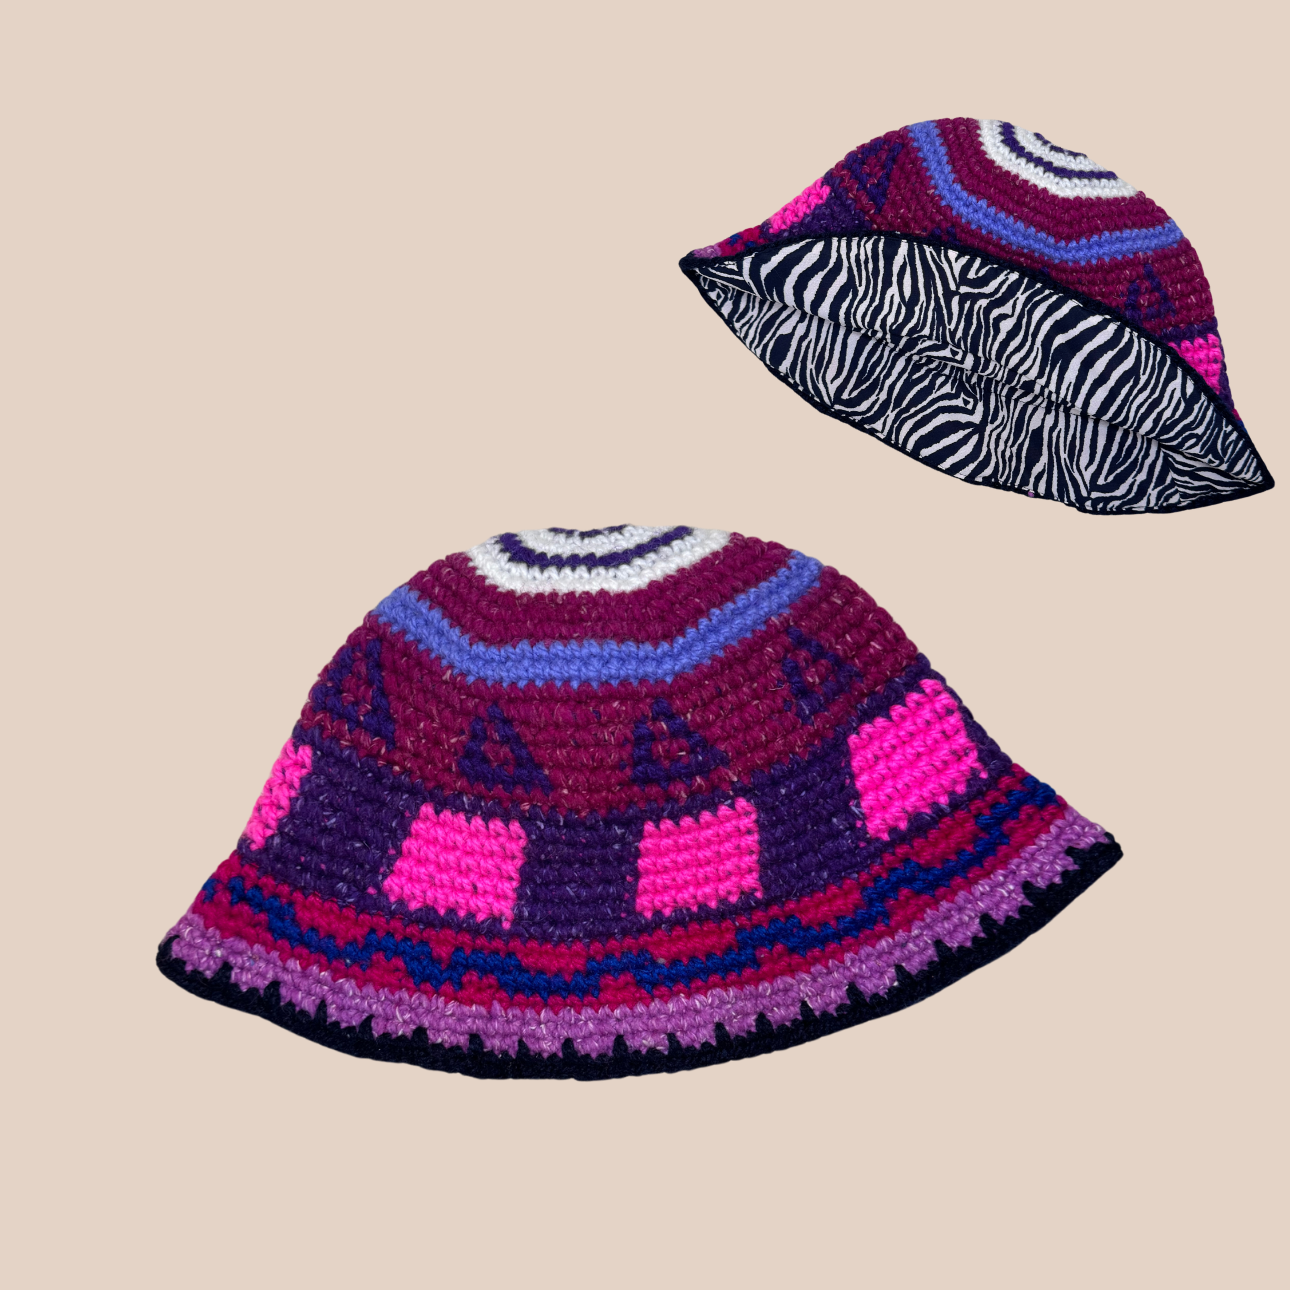 Un bucket hat crocheté en laine et acrylique, arborant des couleurs vives et audacieuses, doublure zebrée